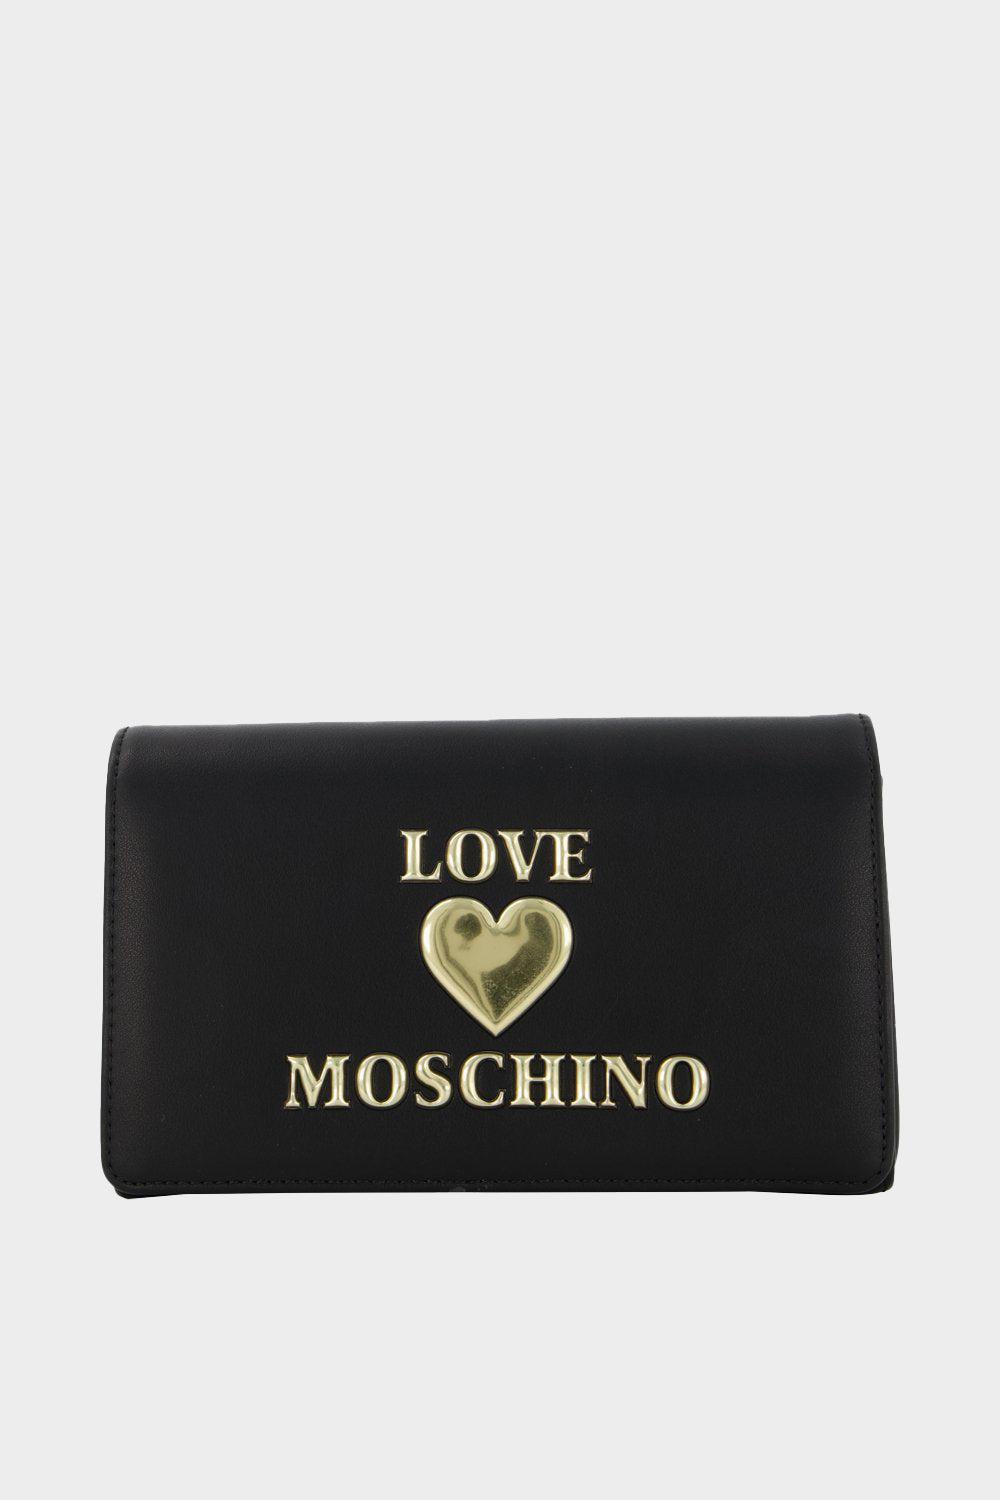 תיק עור אקולוגי קלאפה לנשים תבליט לוגו לב MOSCHINO Vendome online | ונדום .